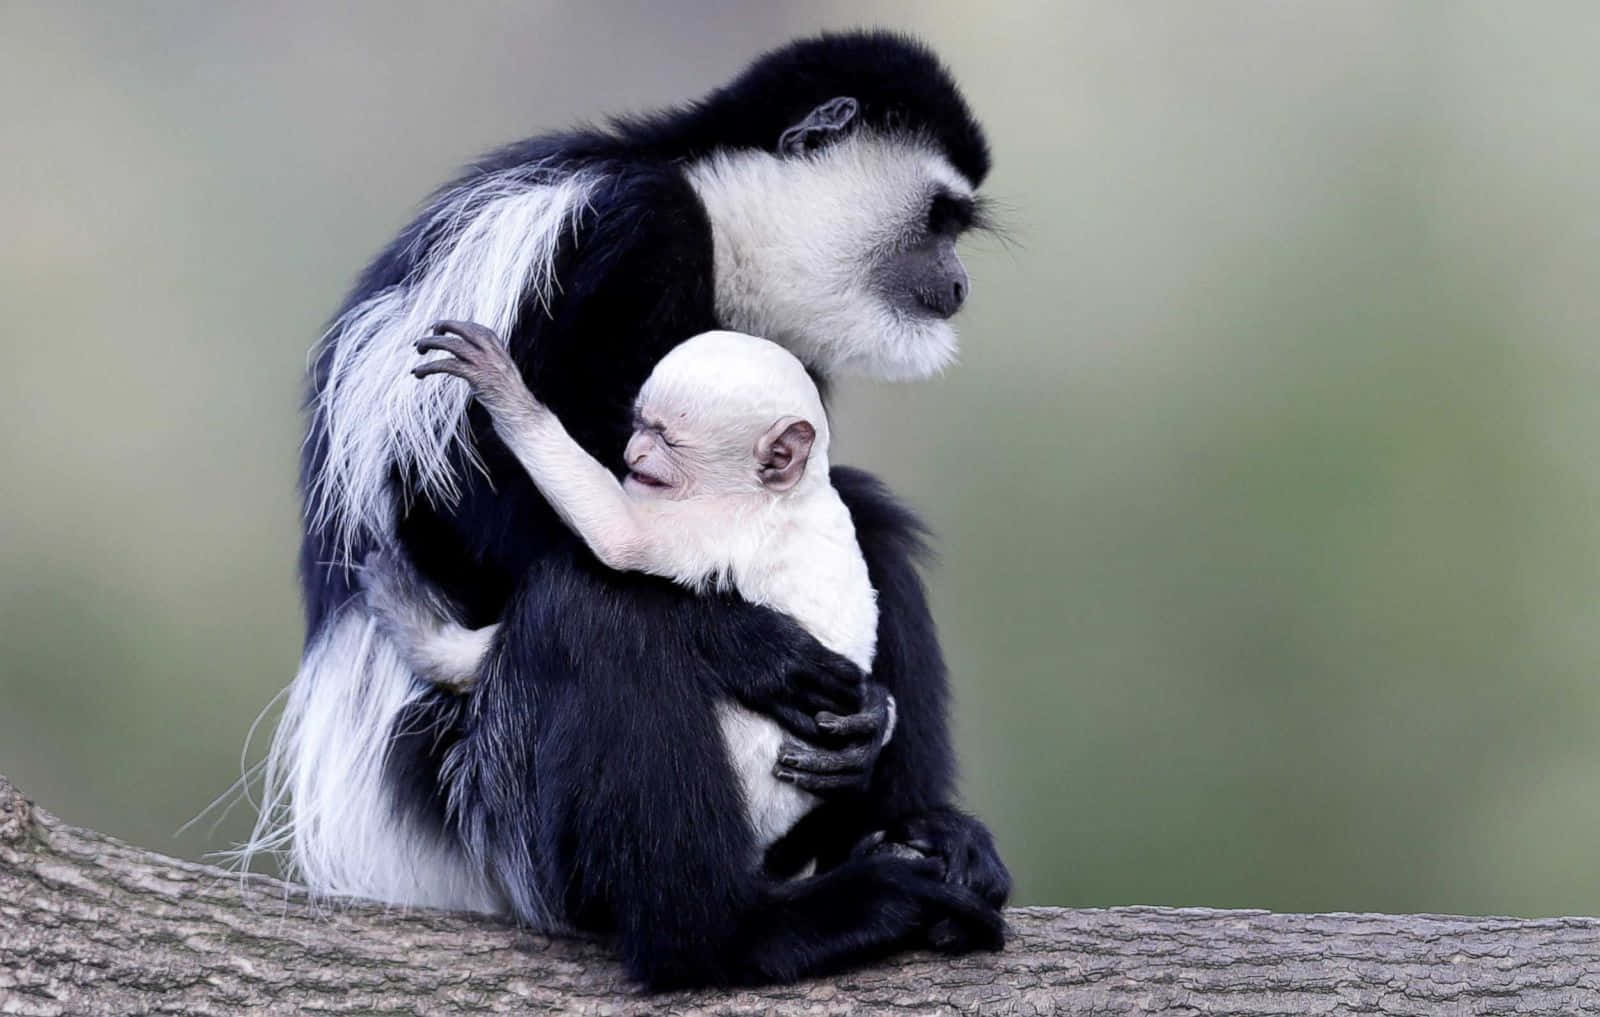 Black&White Cute Monkey Photo Wallpaper